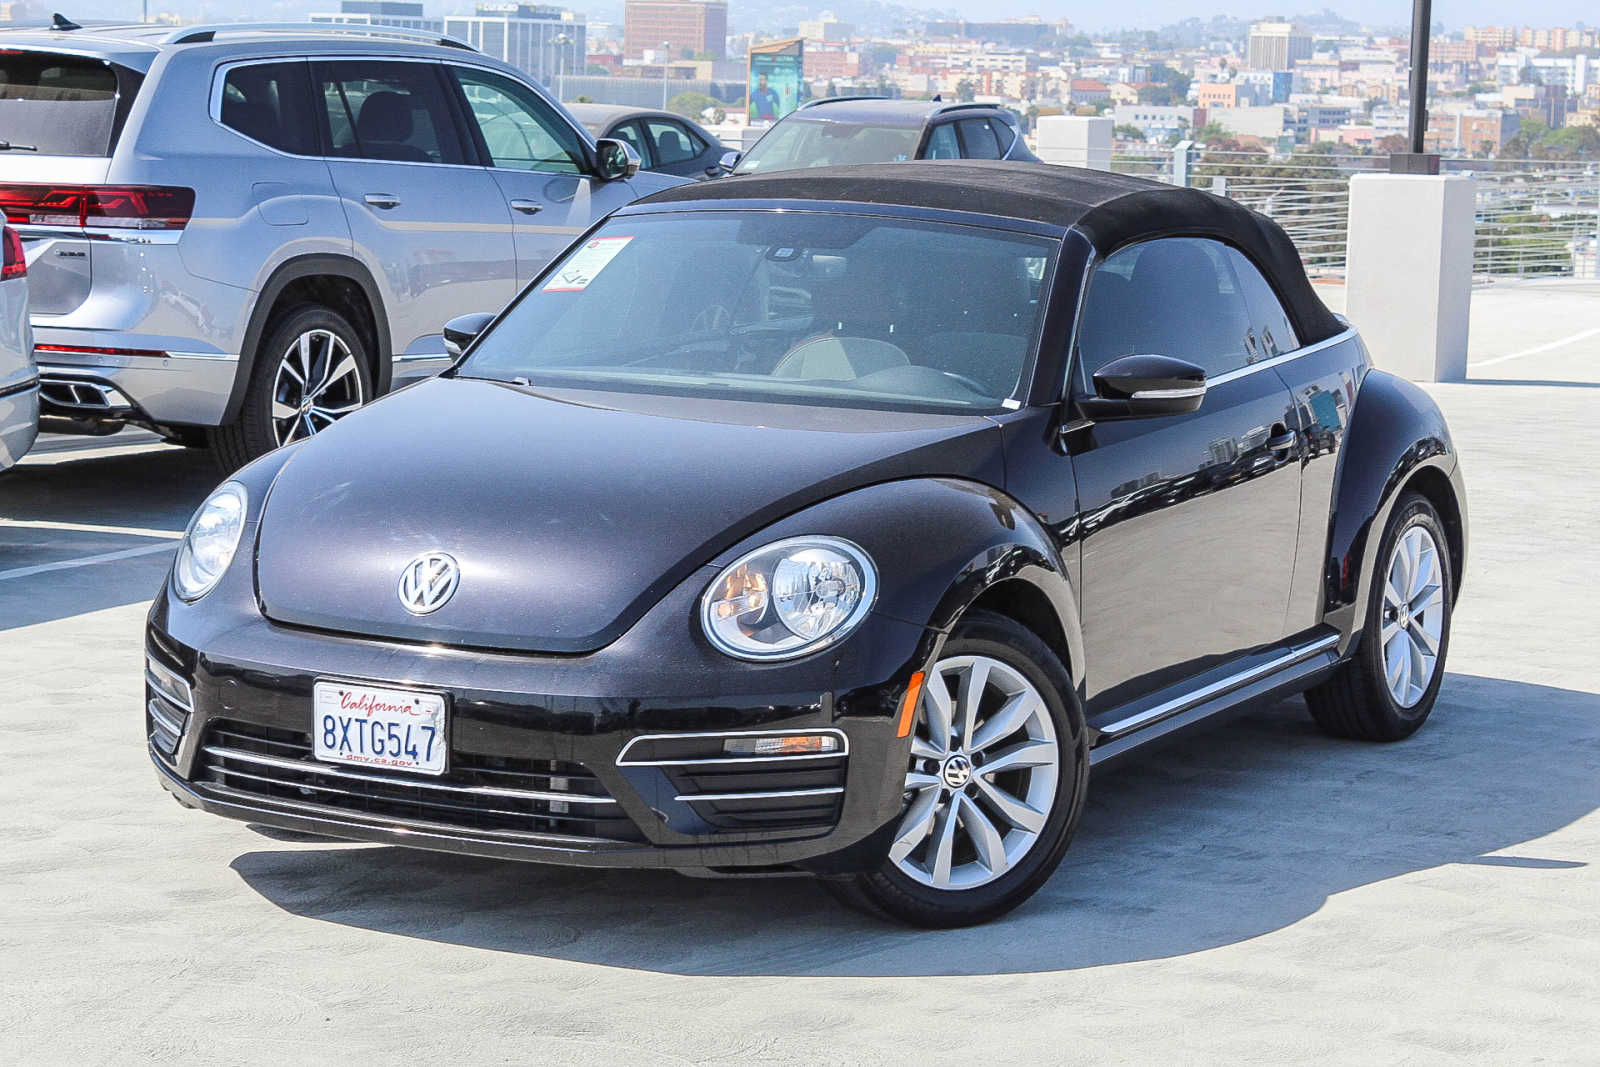 2017 Volkswagen Beetle Classic Convertible